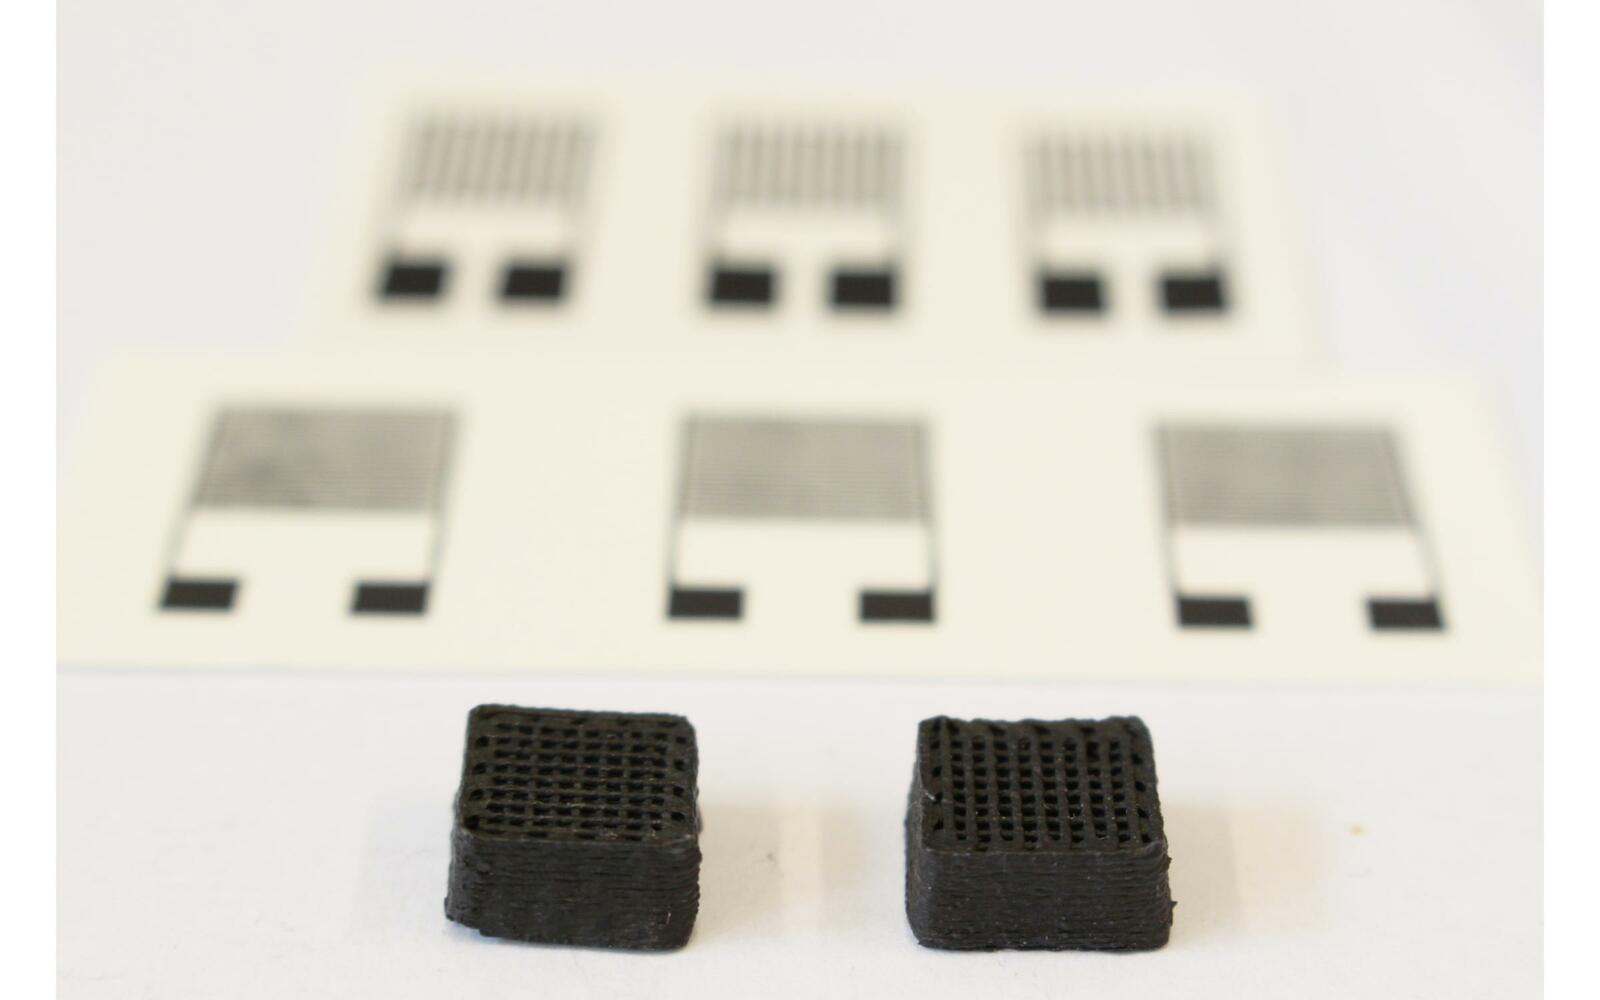 Neuartiger Werkstoff für gedruckte Schaltungen: Zwei Testquader von 1 cm Breite aus dem 3D-Drucker. Im Hintergrund sieht man die gedruckten elektronischen Sensoren.